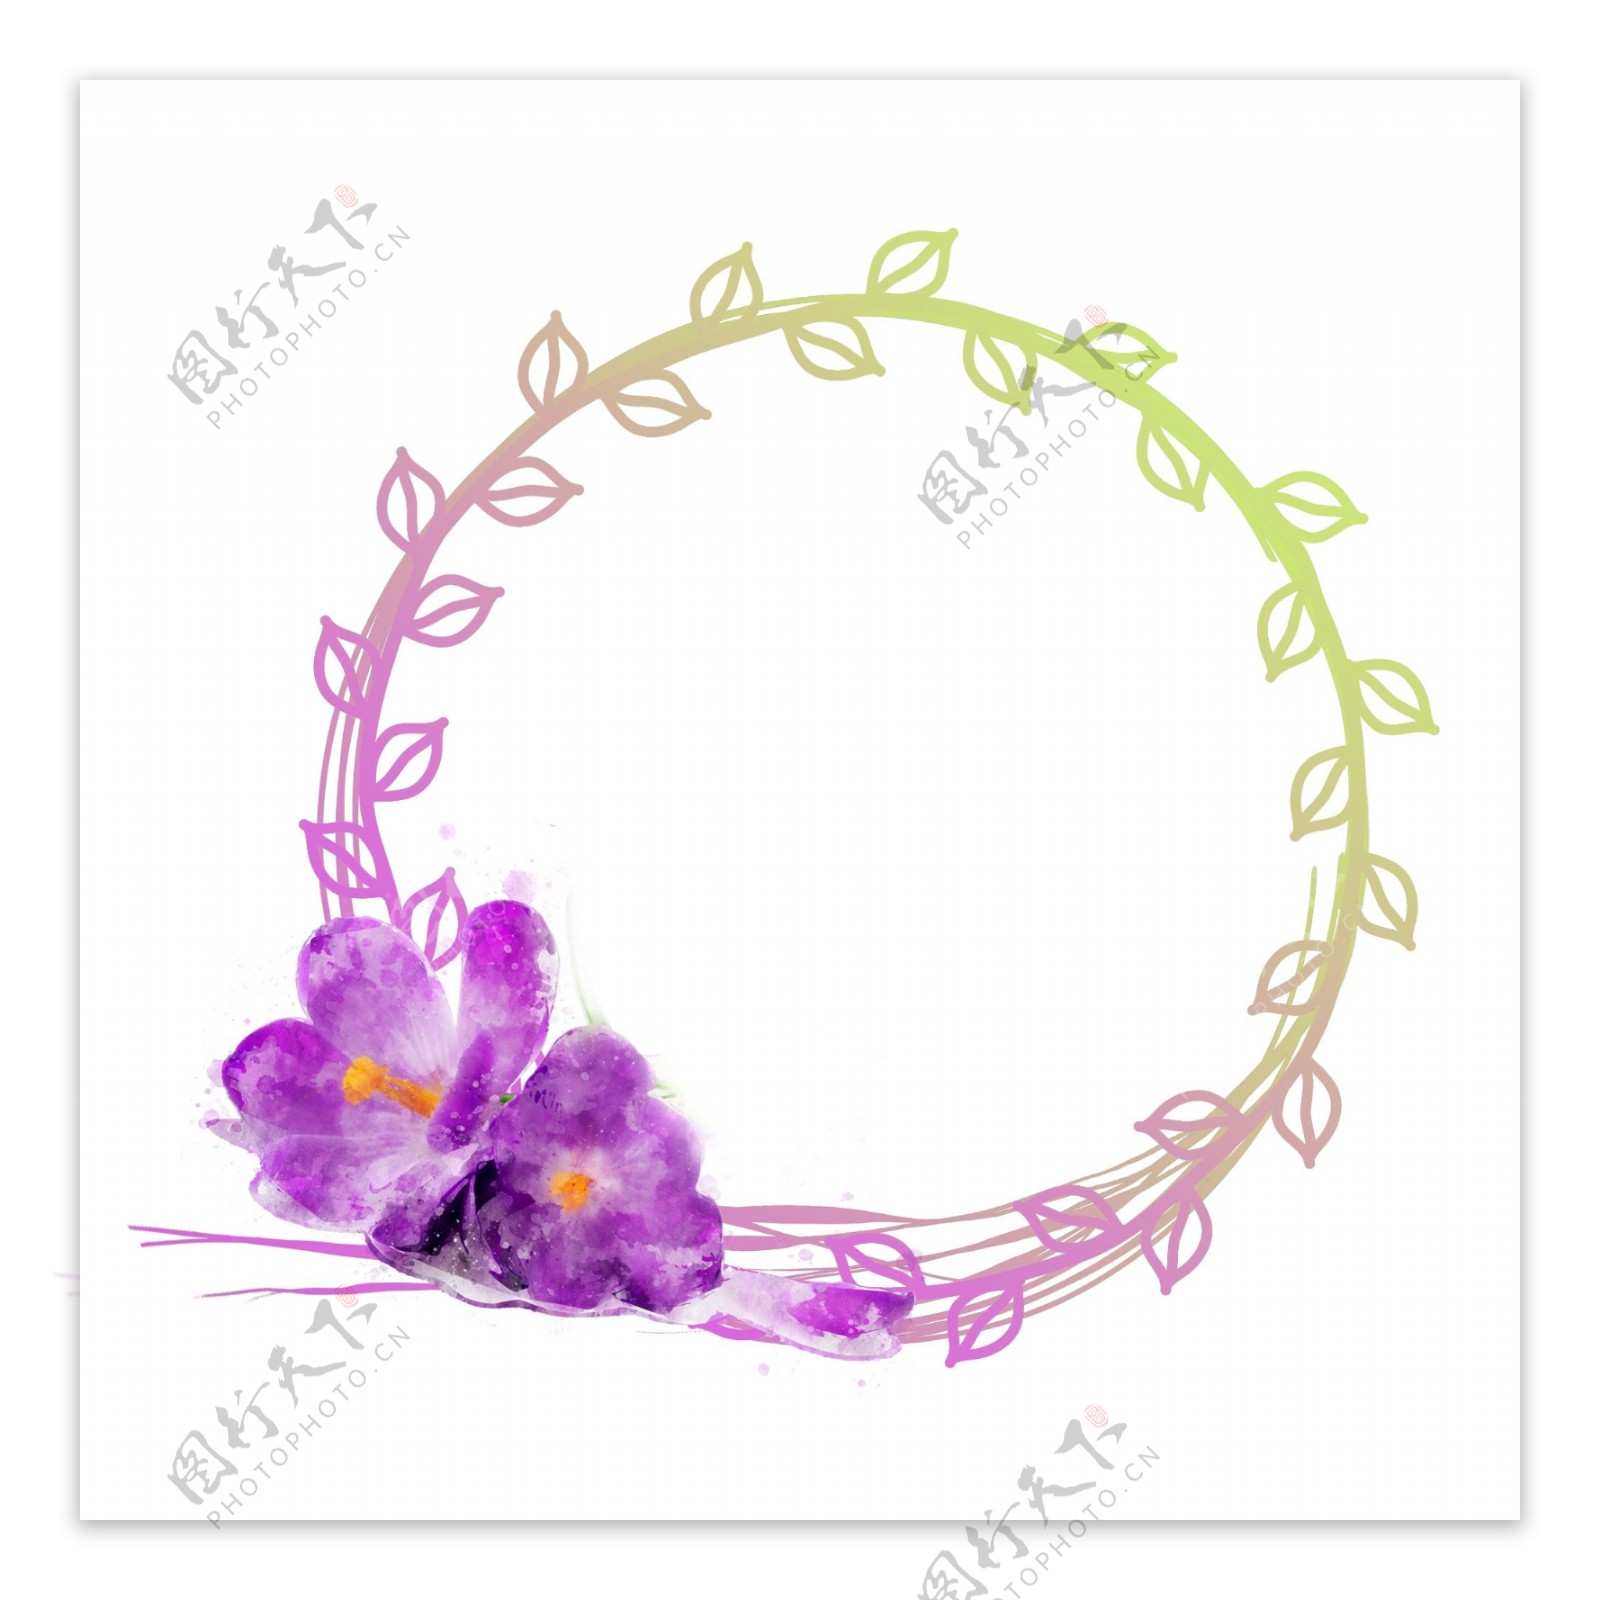 手绘紫色植物花卉水彩圆形边框元素